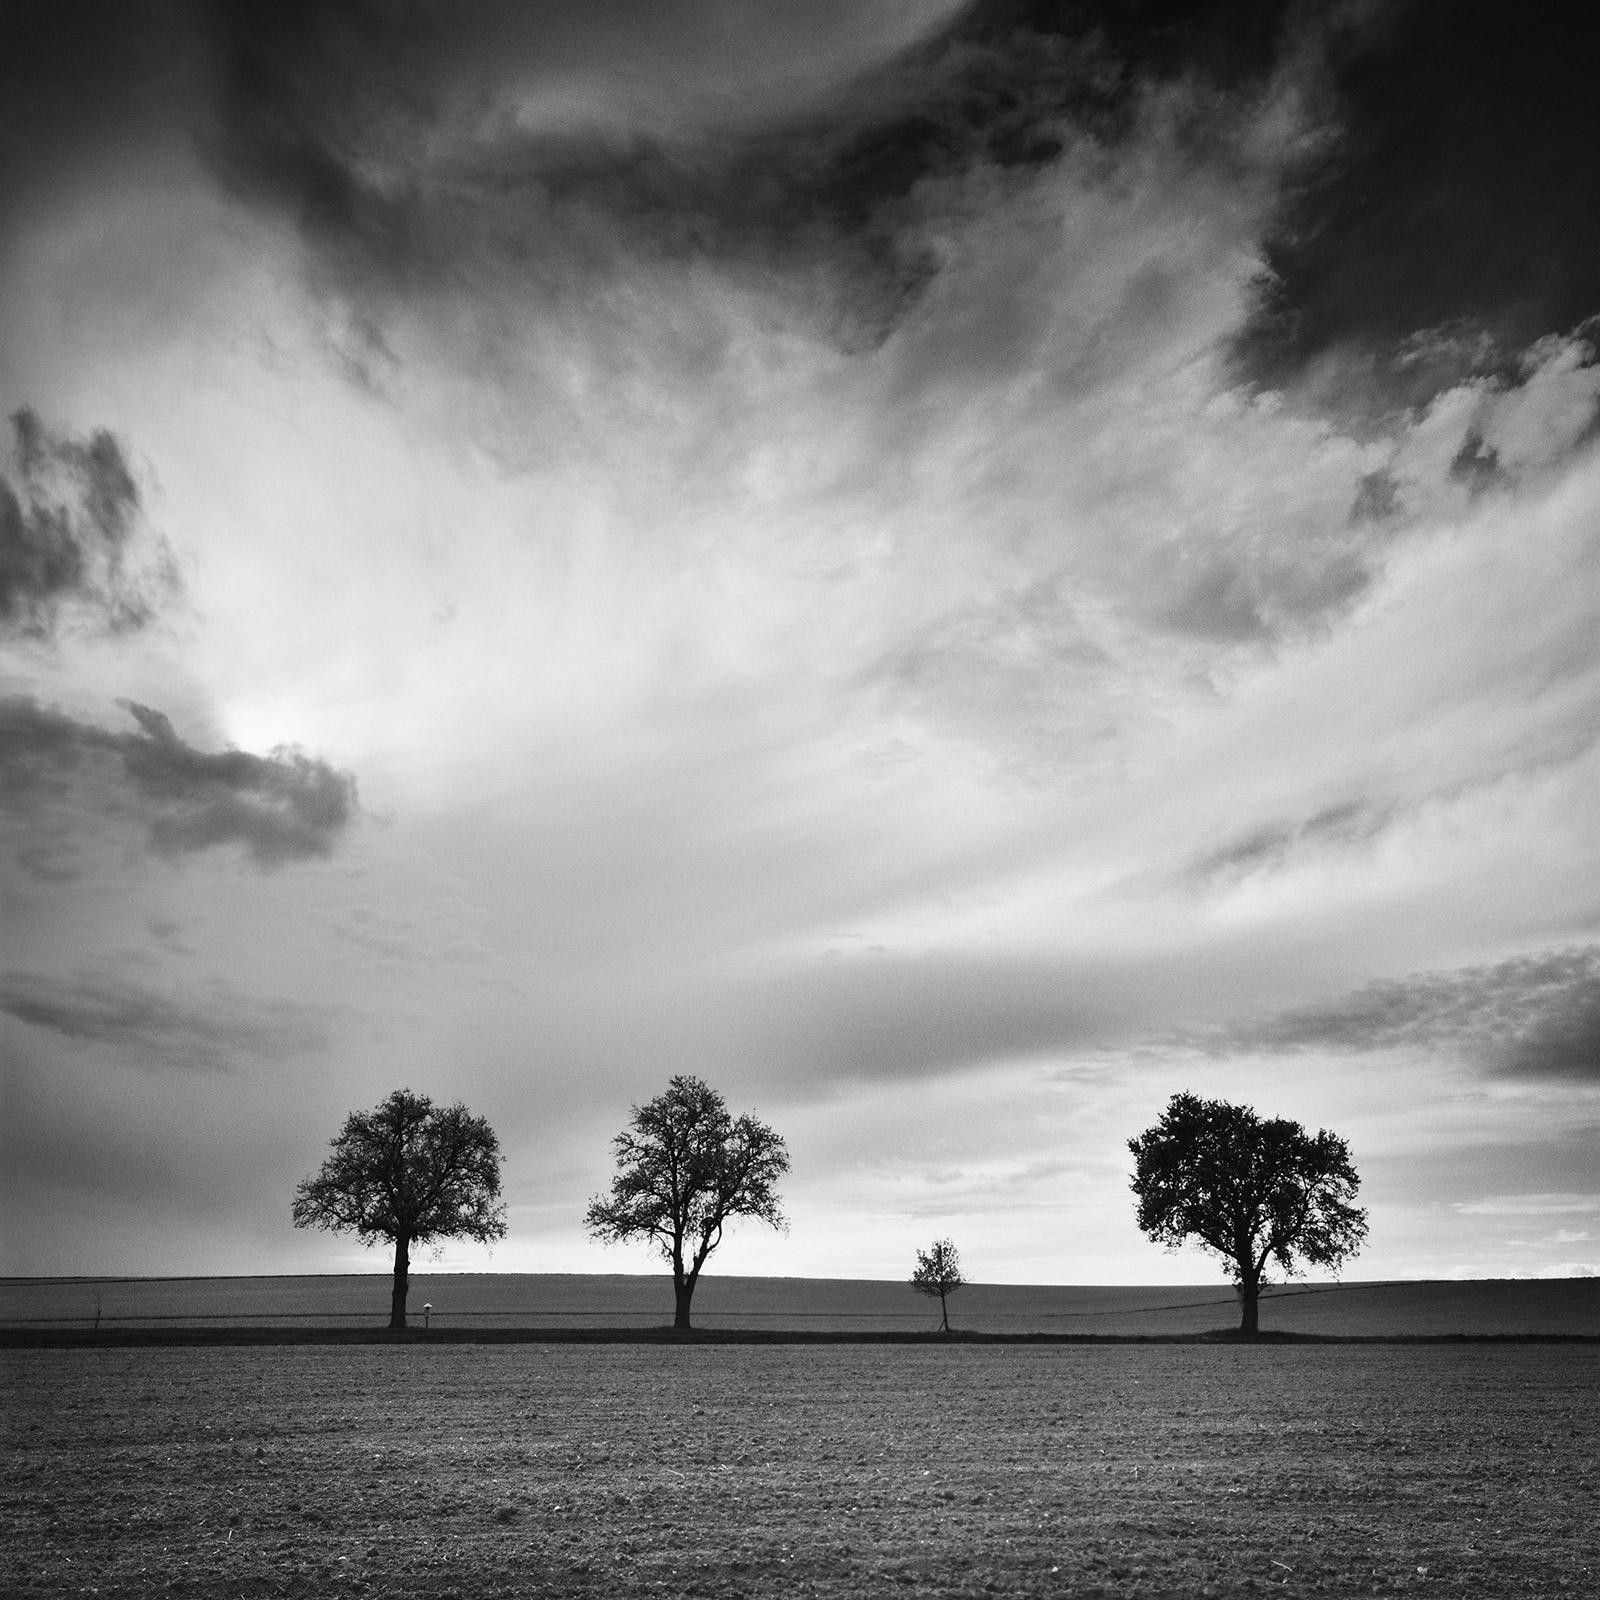 Gerald Berghammer Landscape Photograph – Dreieinhalb Baum, sehr wolkenverhangen, Sturm, Schwarz-Weiß-Landschaftsfotografie